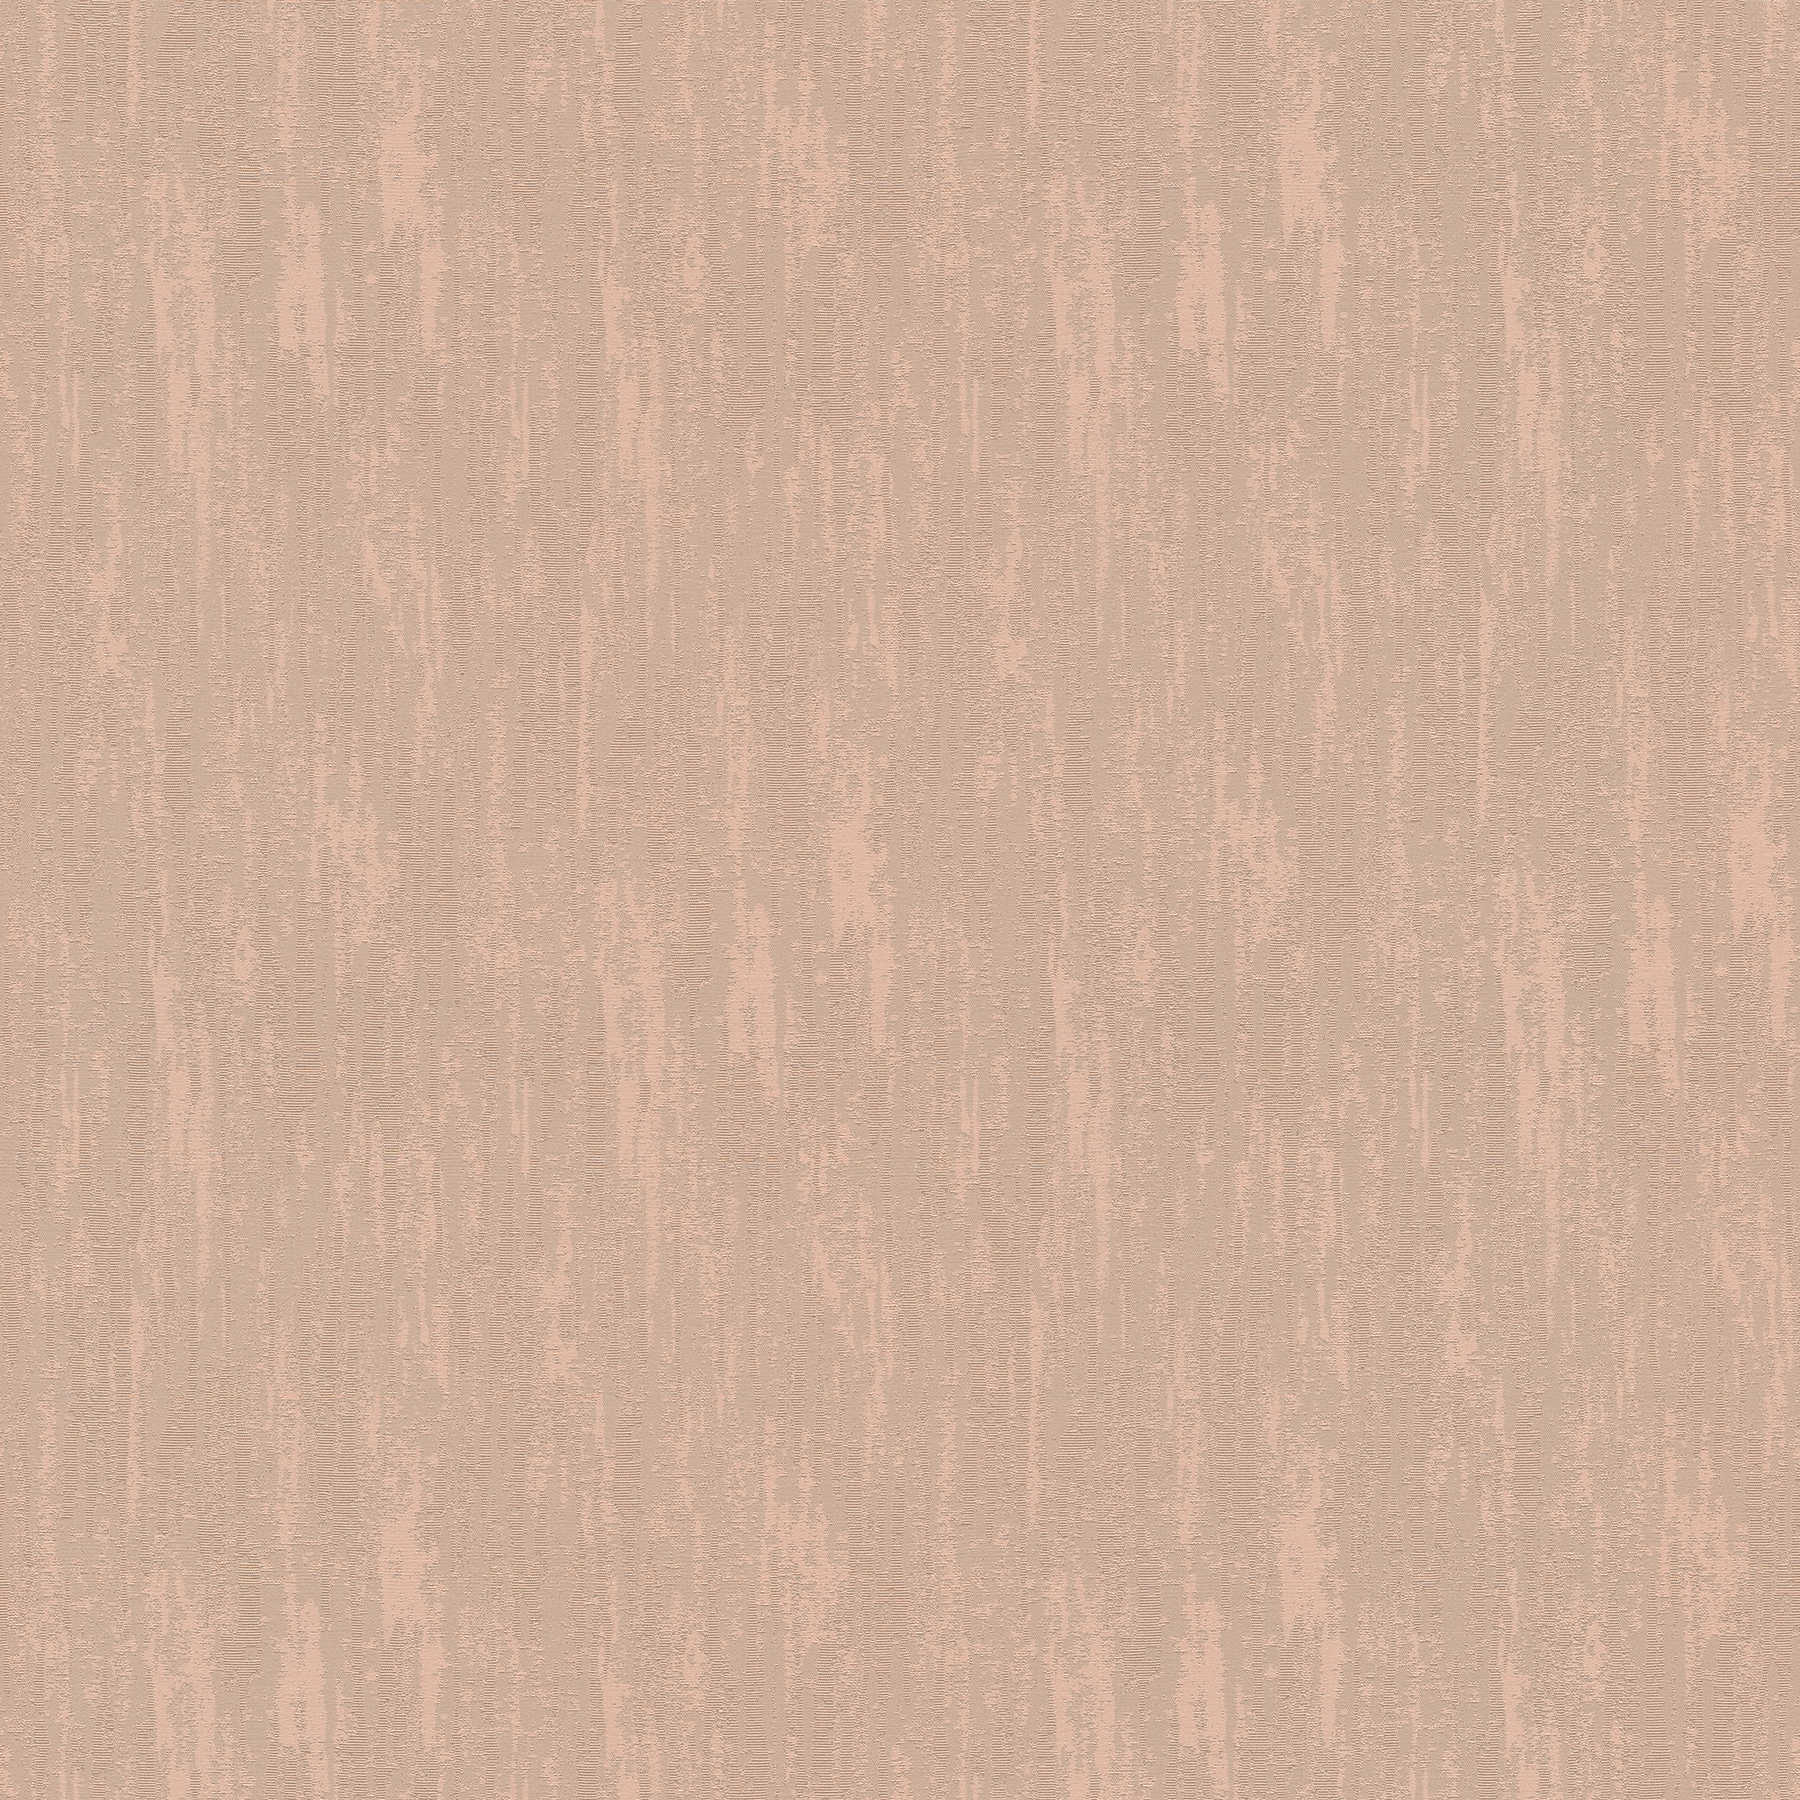 Hoogwaardig vliesbehang effen met glittereffect - bruin
